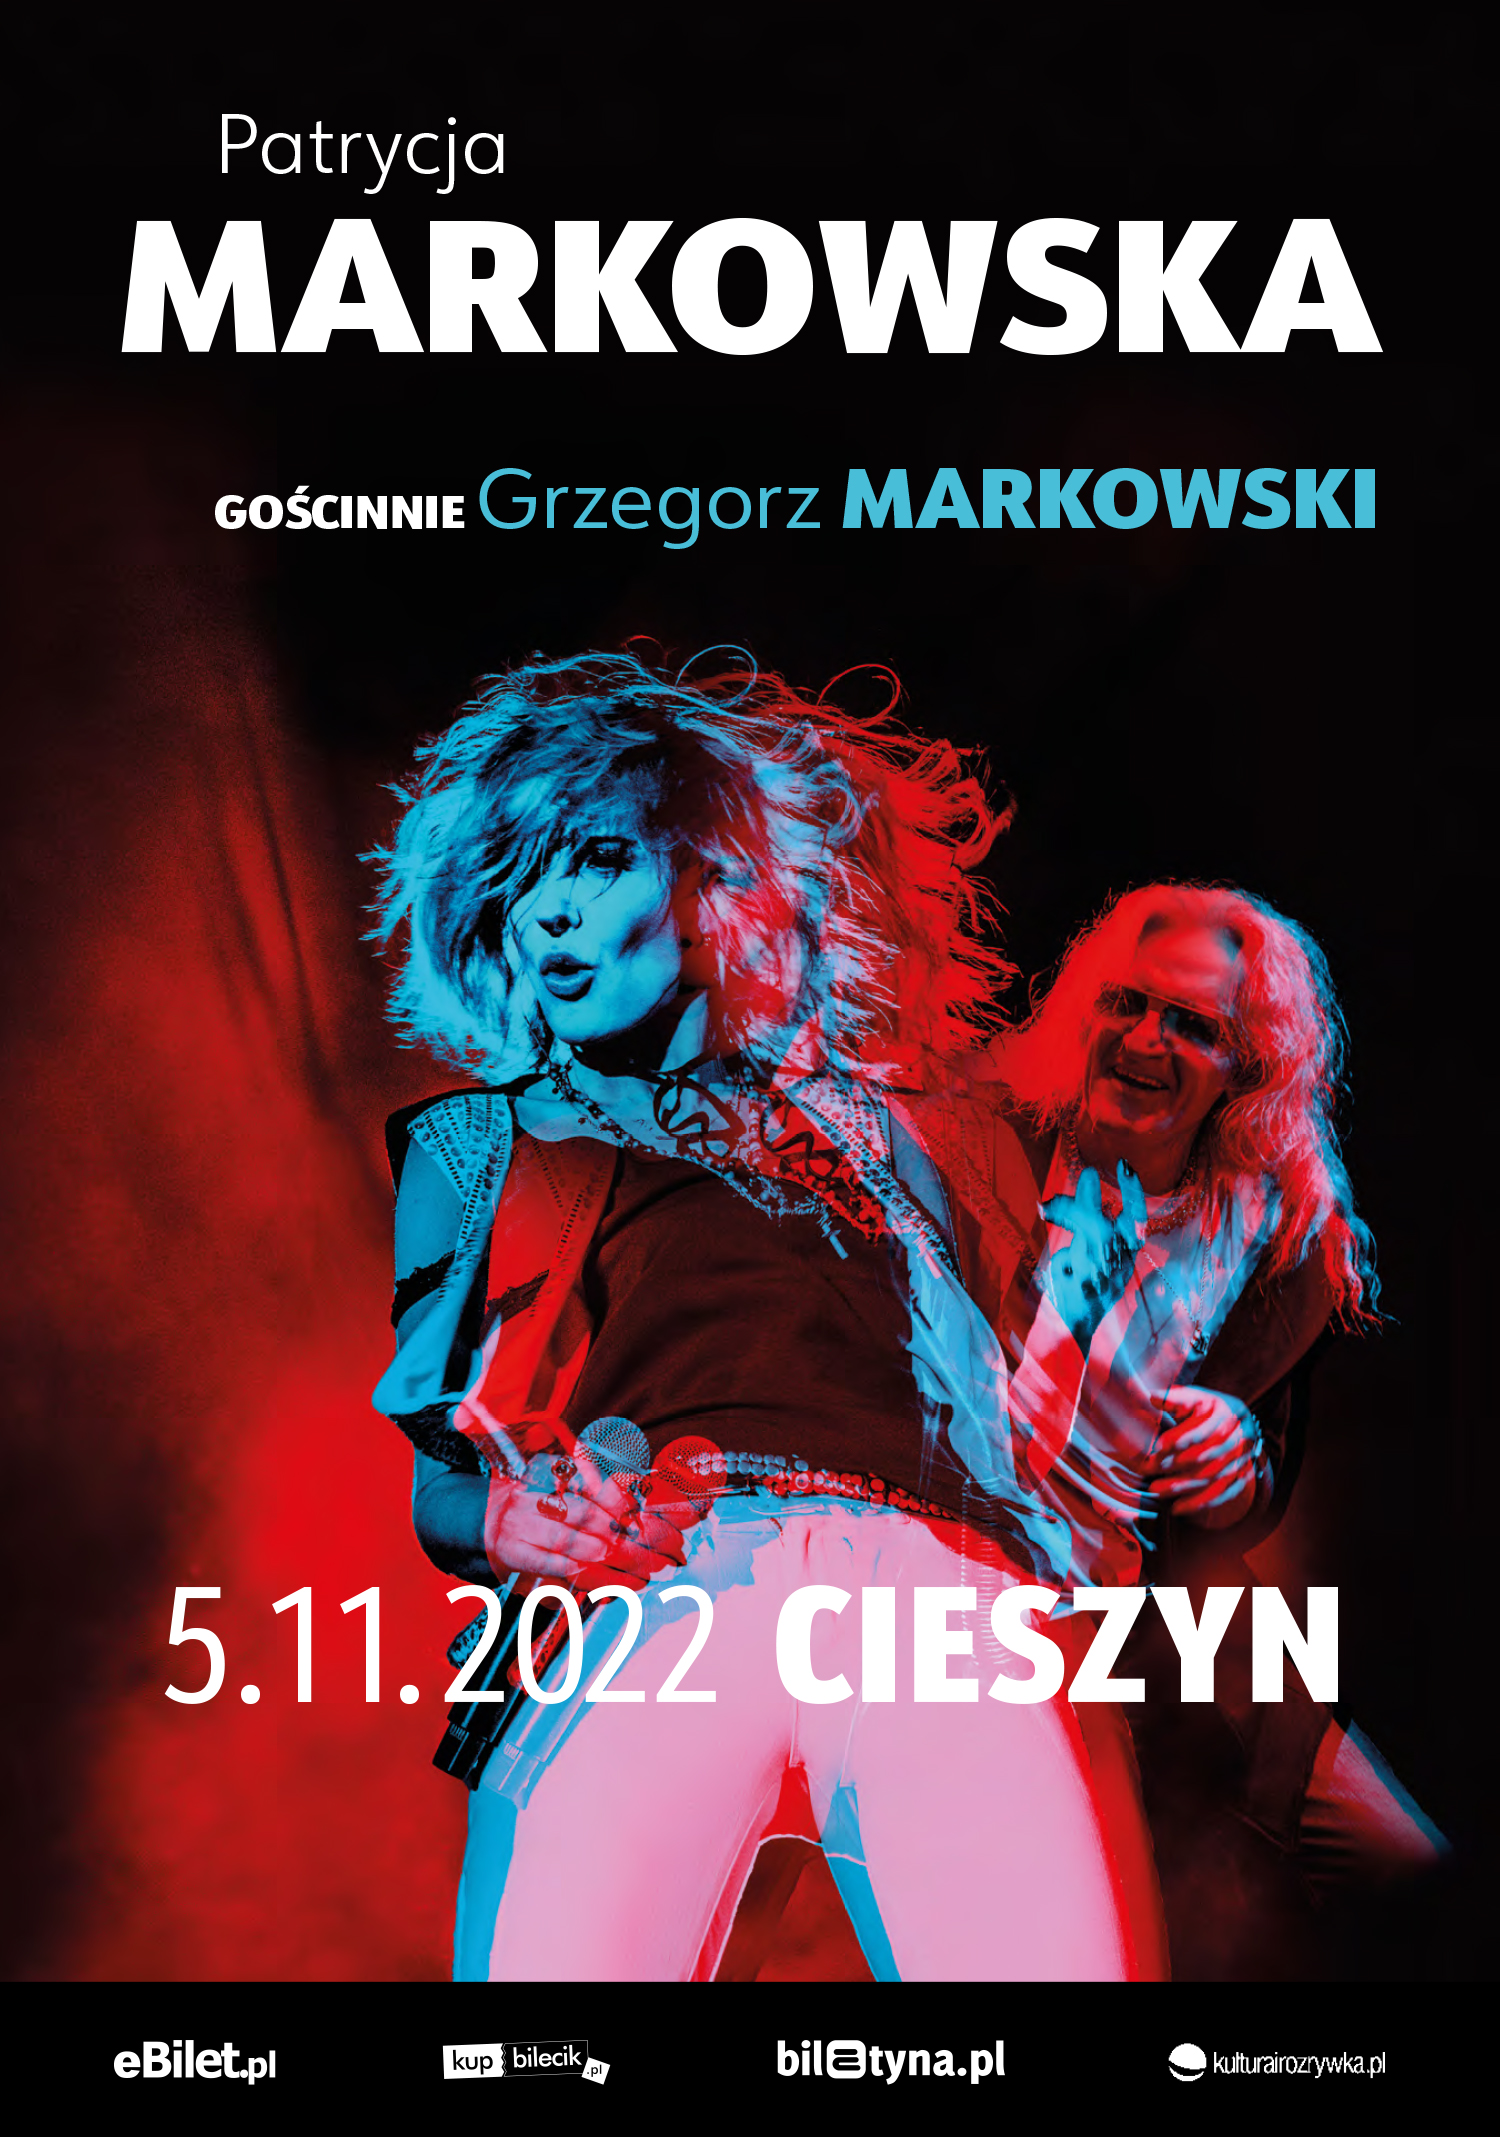 Patrycja MARKOWSKA, gościnnie Grzegorz MARKOWSKI Plakat